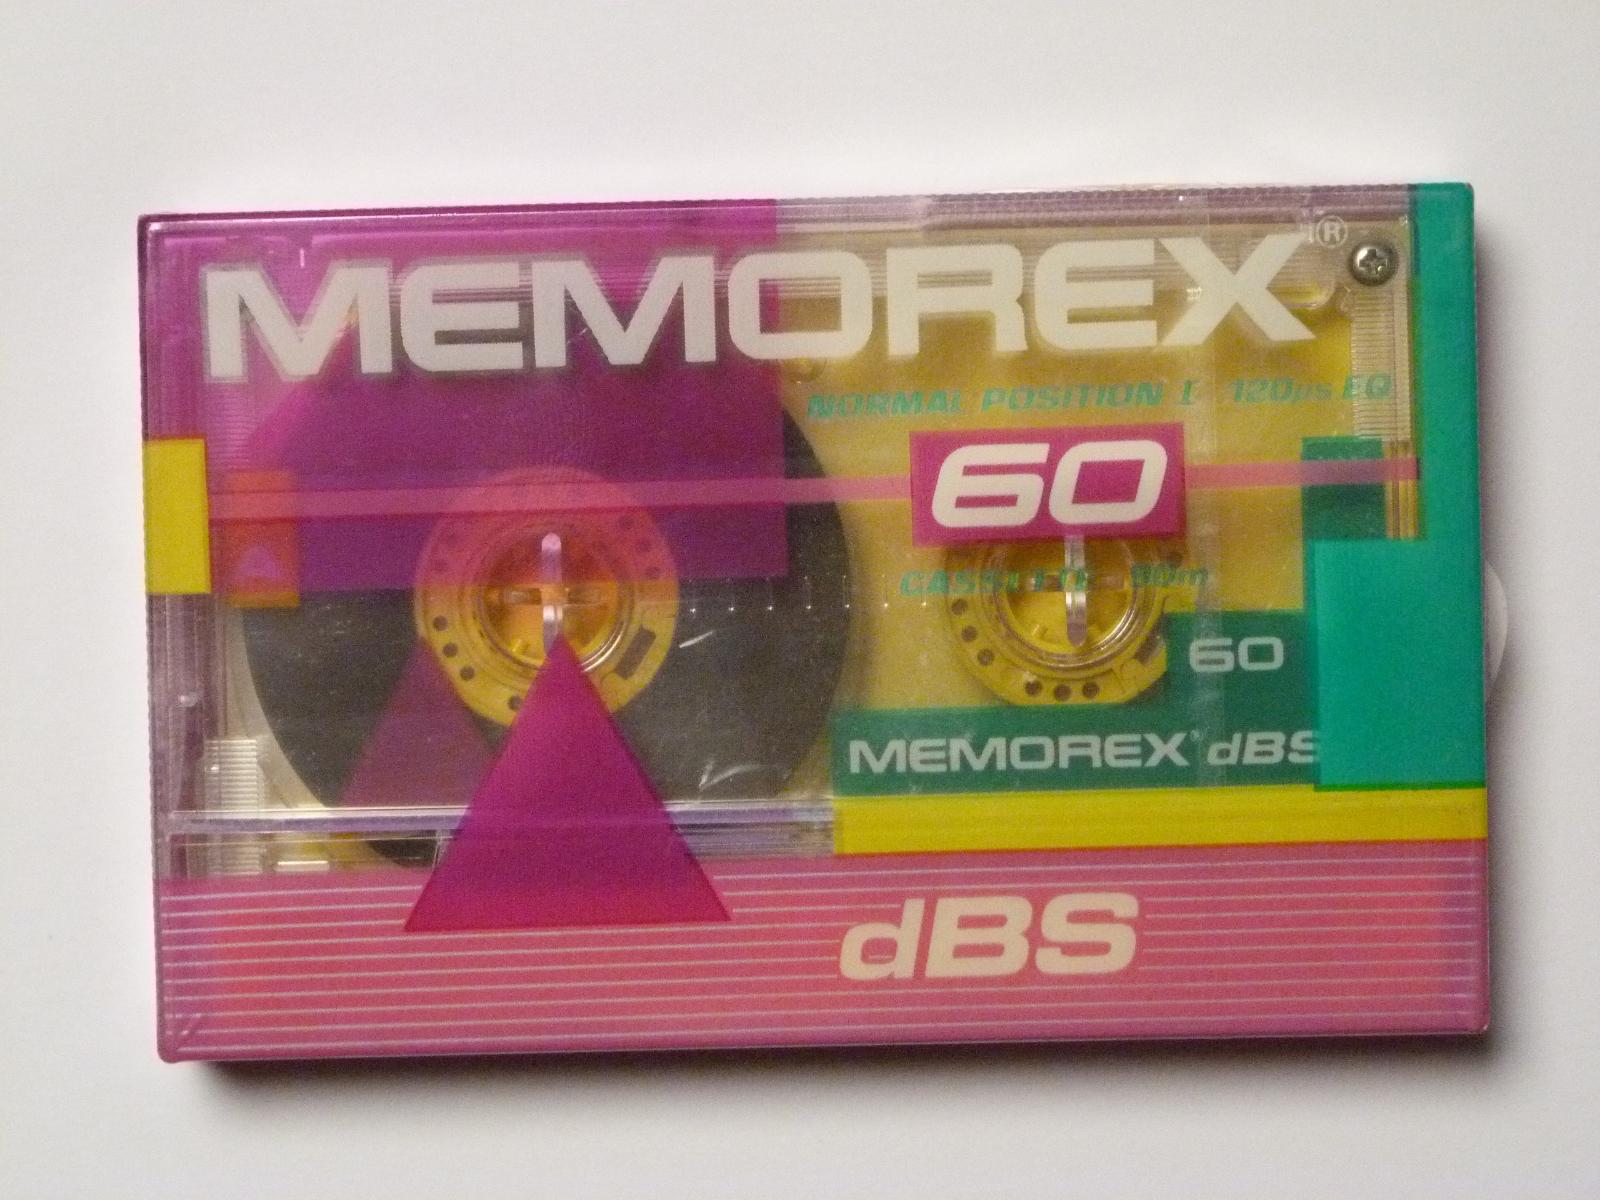 kazeta Memorex dBS 60 typ I, 1987-90 - Elektro